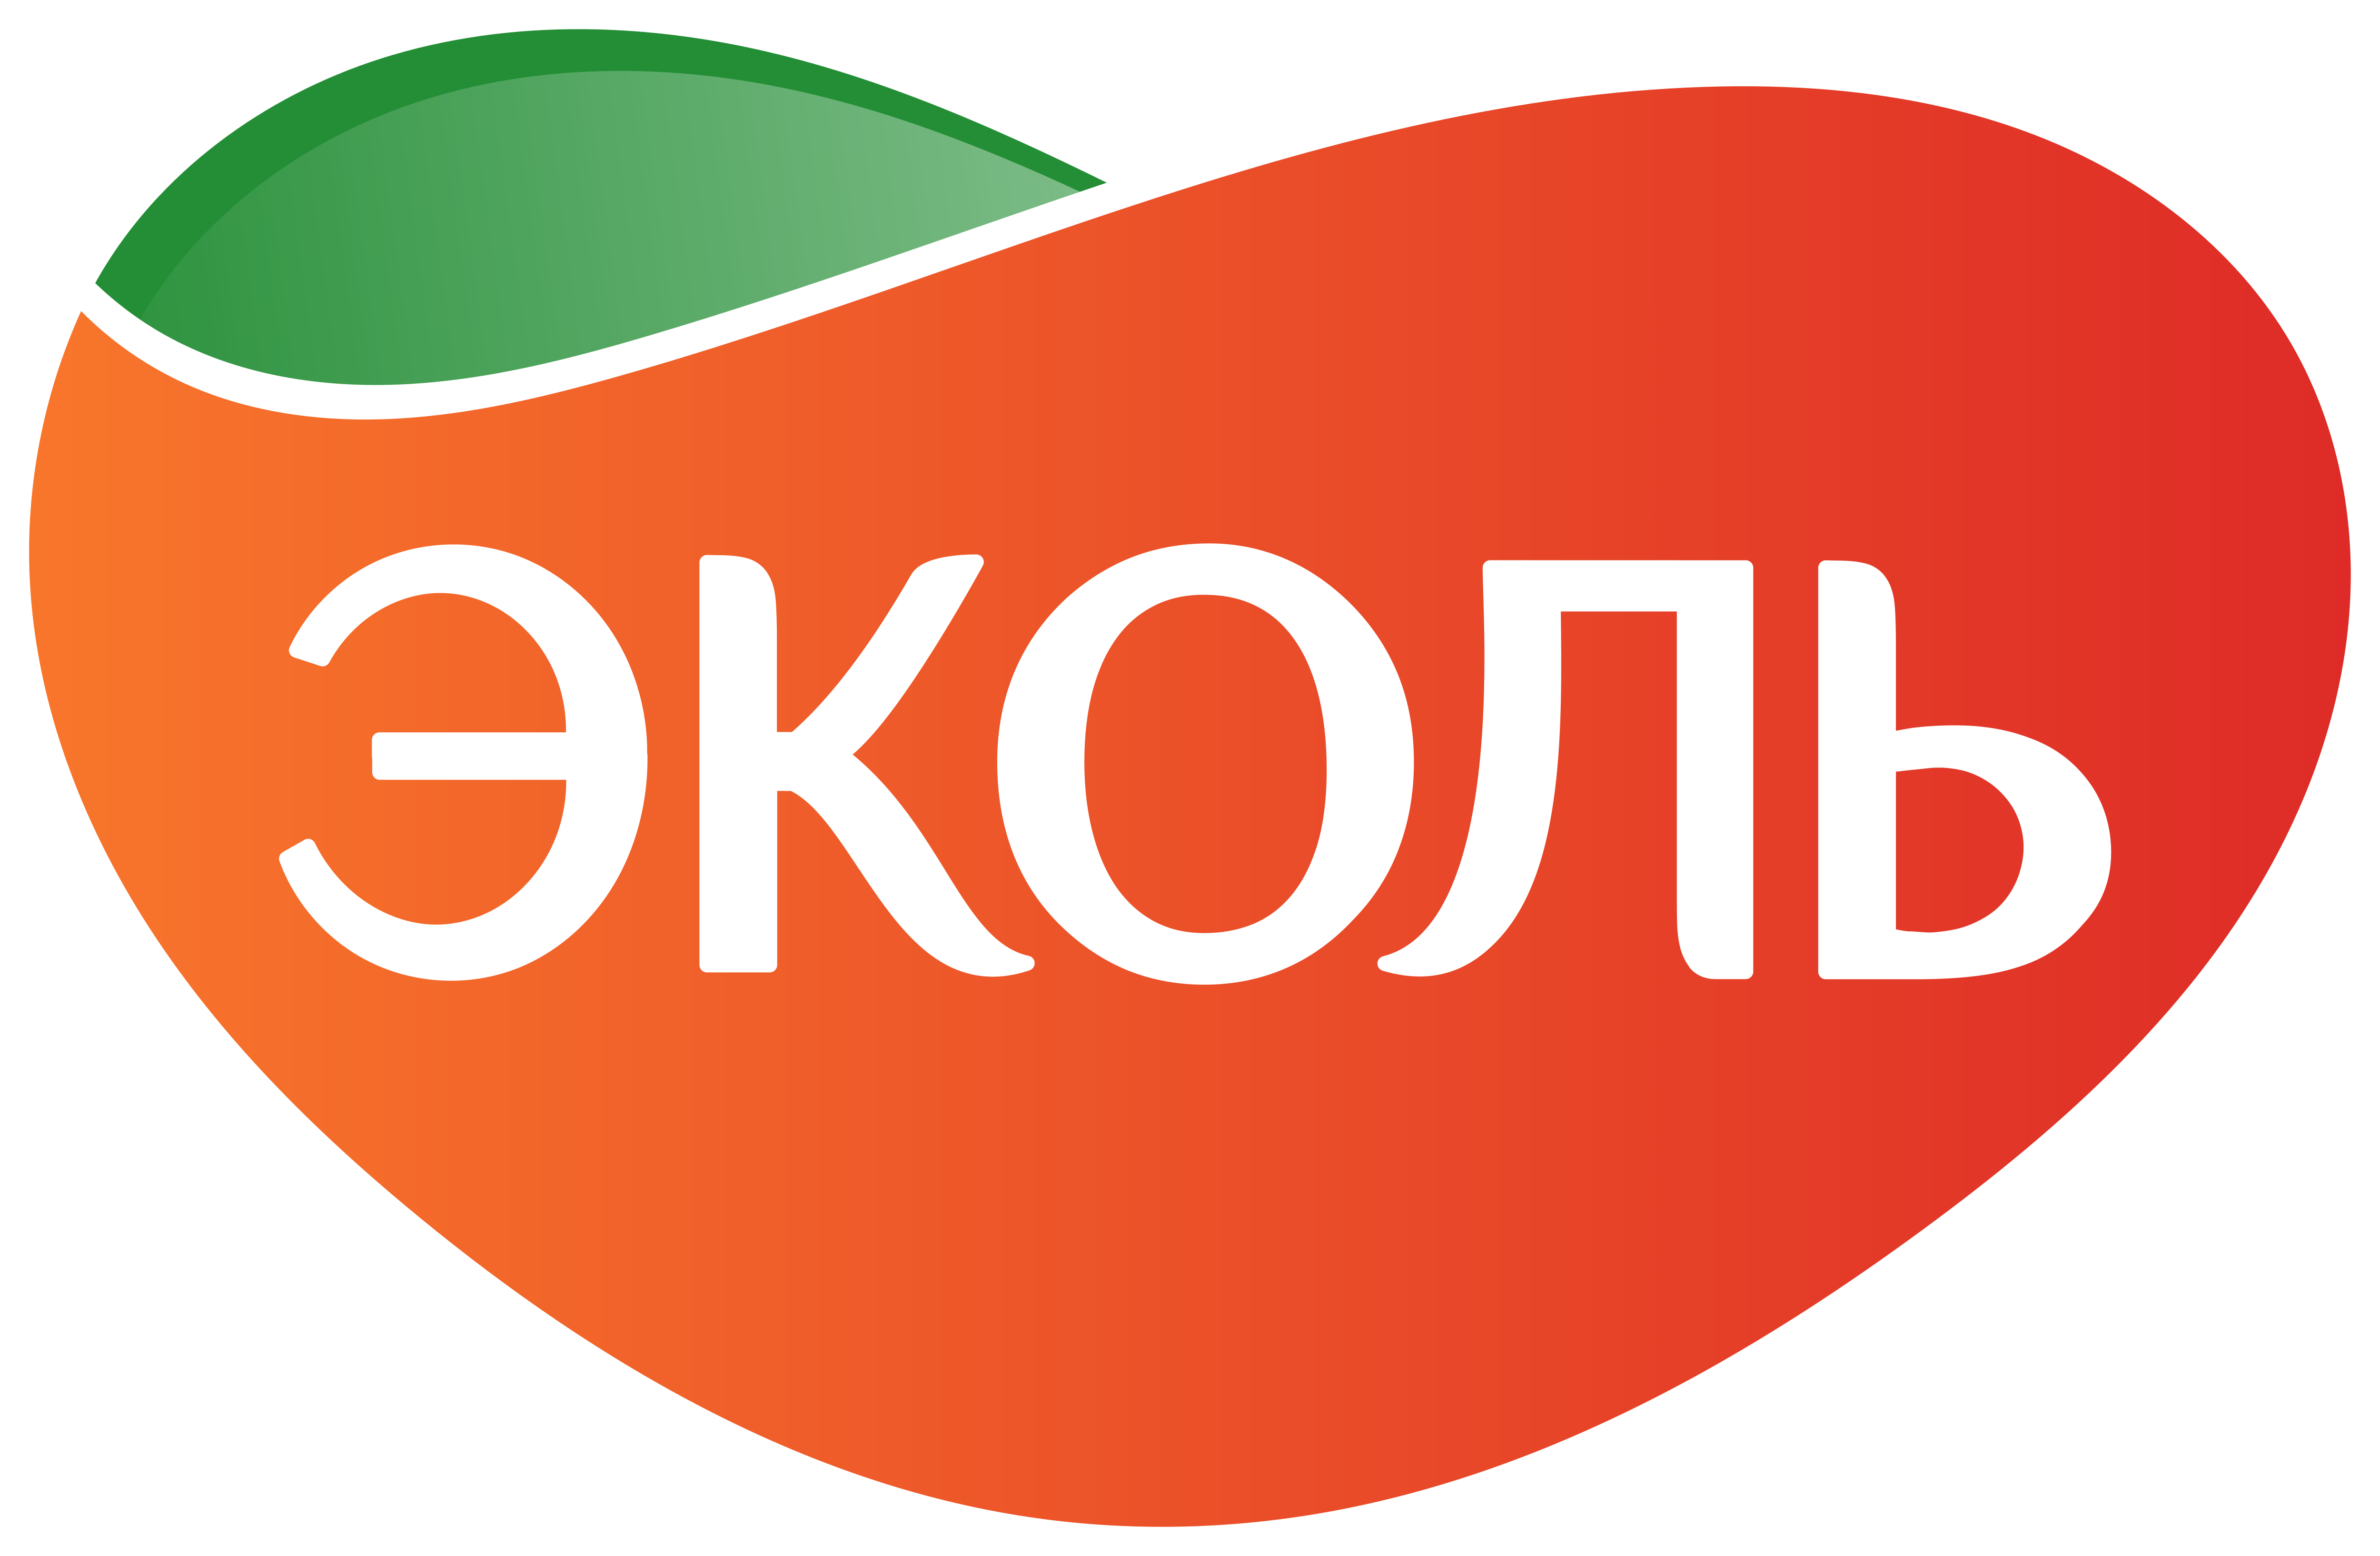 Лого с белой обводкой EKOL EKOLMARKET ЭКОЛЬ